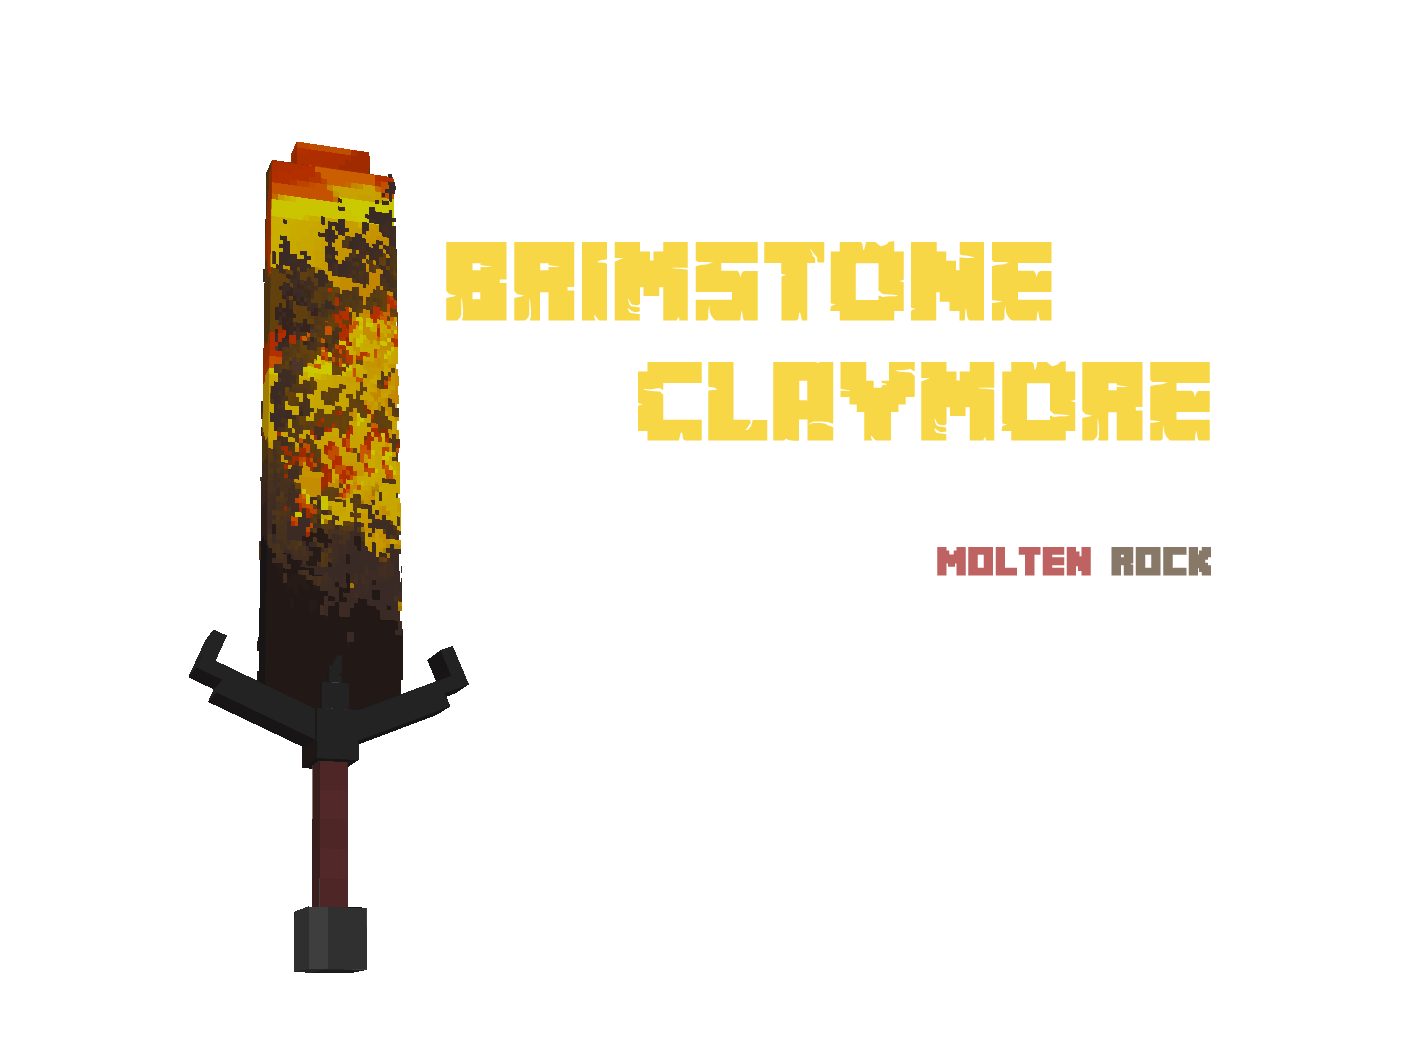 Brimstone Claymore